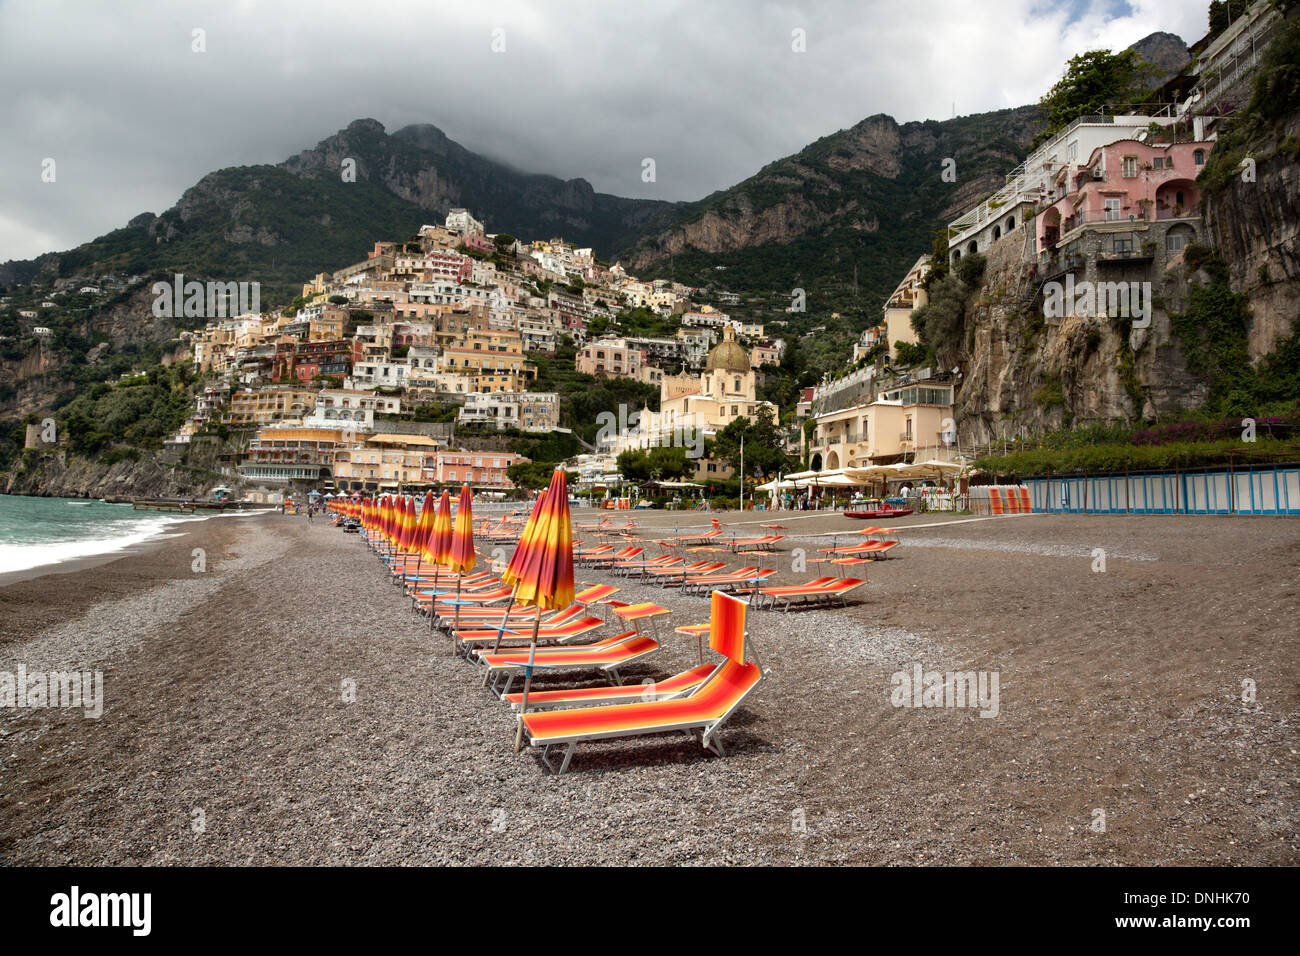 Sedie a sdraio sulla spiaggia, Positano, Costiera Amalfitana, Campania, Italia Foto Stock